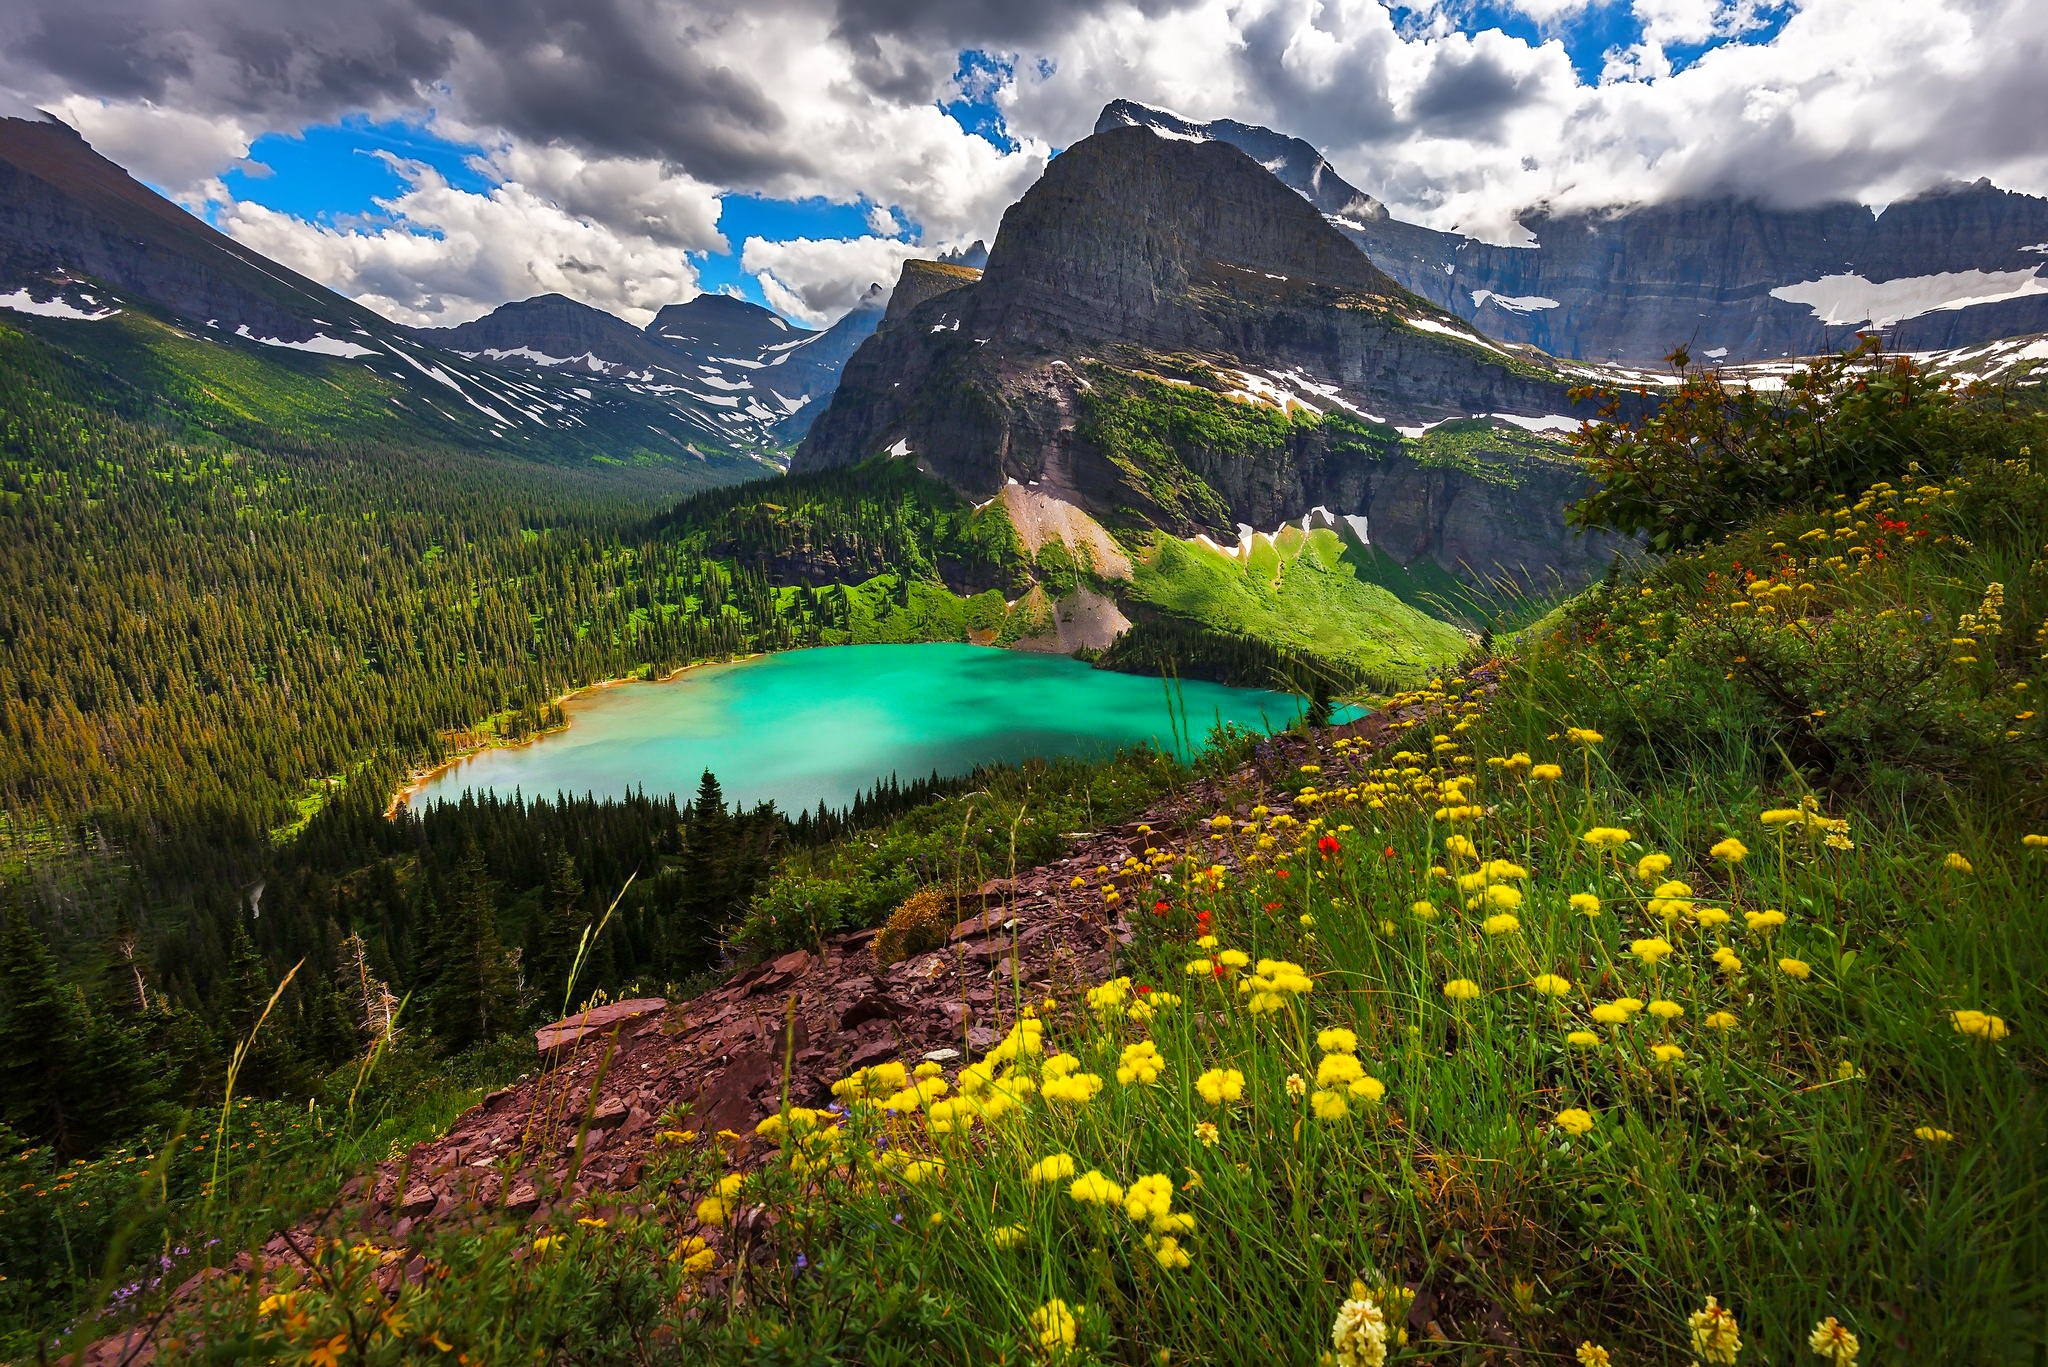 Скачать обои бесплатно Горы, Гора, Озеро, Цветок, Желтый Цветок, Земля/природа картинка на рабочий стол ПК